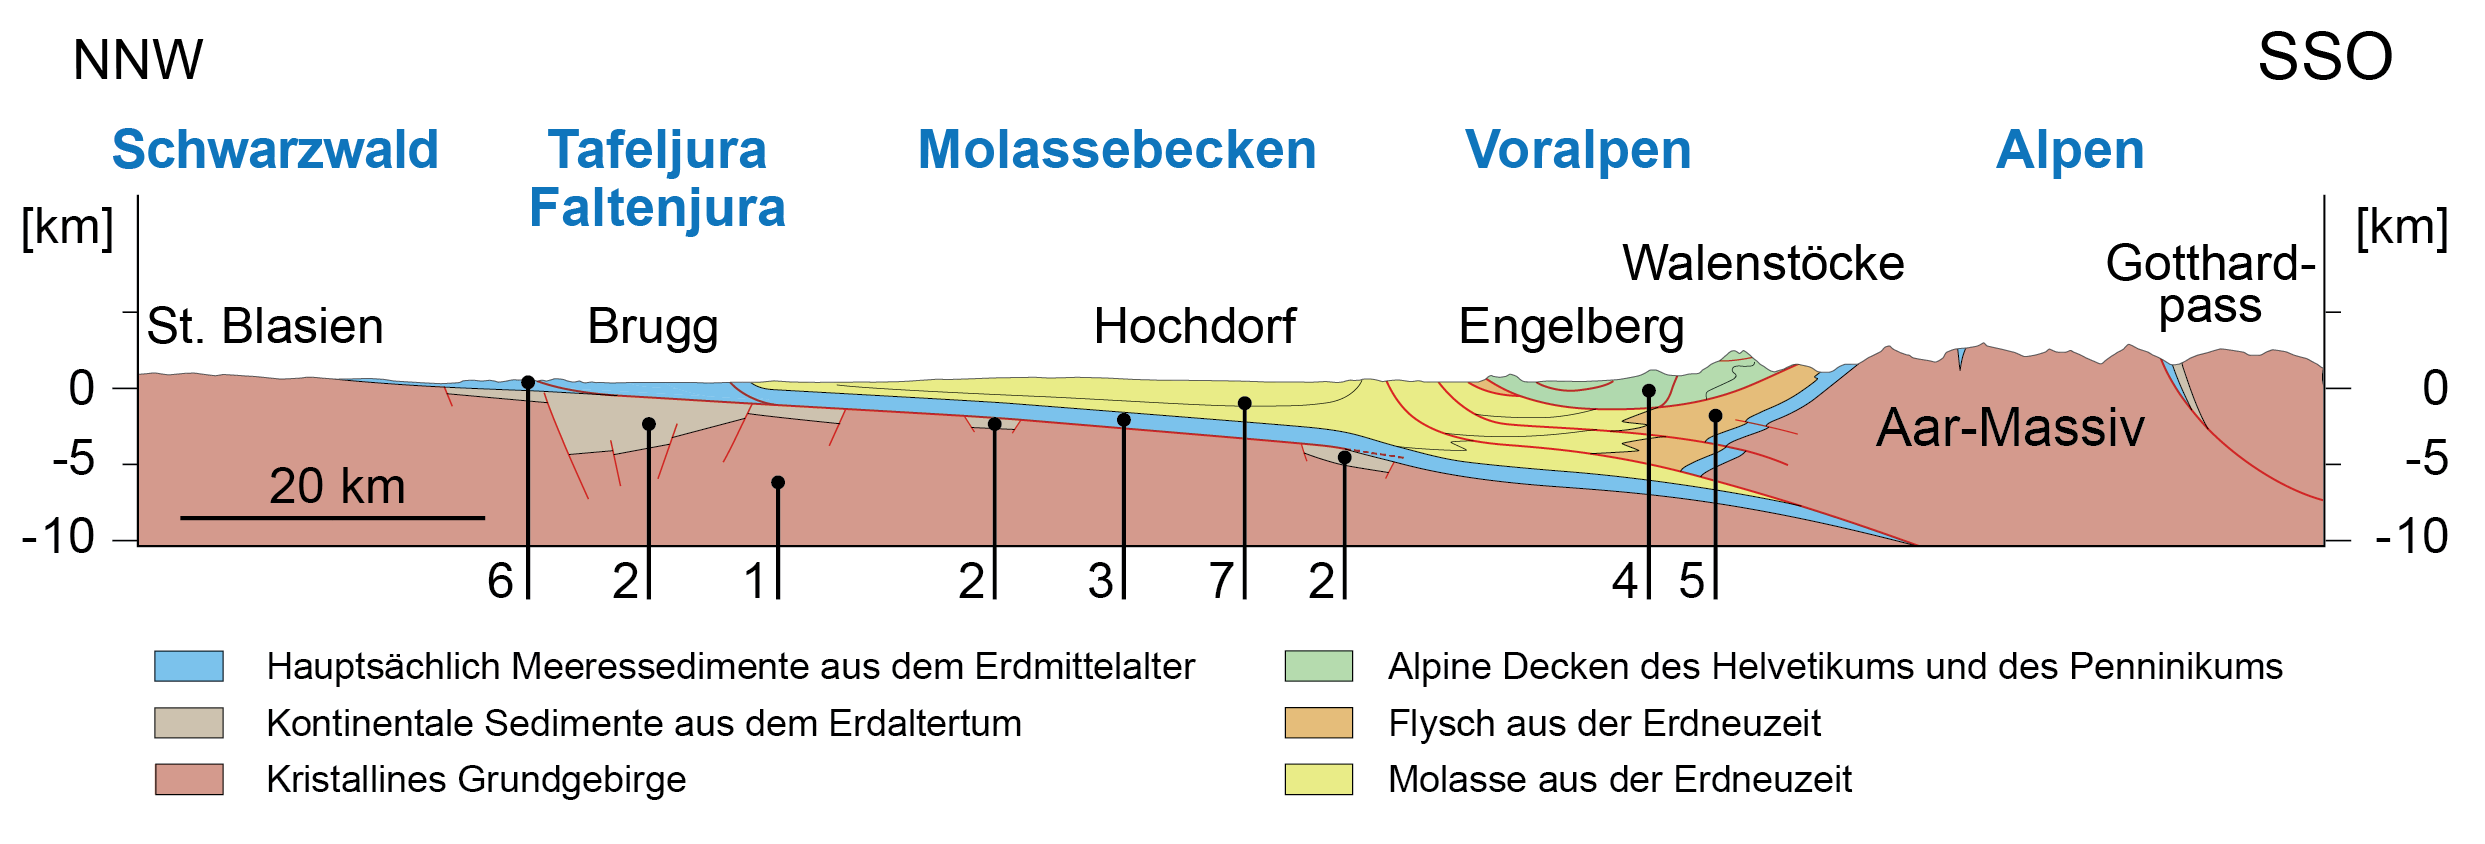 Geologisches Profil der Schweiz von Nordnordwesten nach Südsüdosten (Nummern siehe Text). Abbildung: Nagra NTB 14-02, Dossier III (stark vereinfacht).